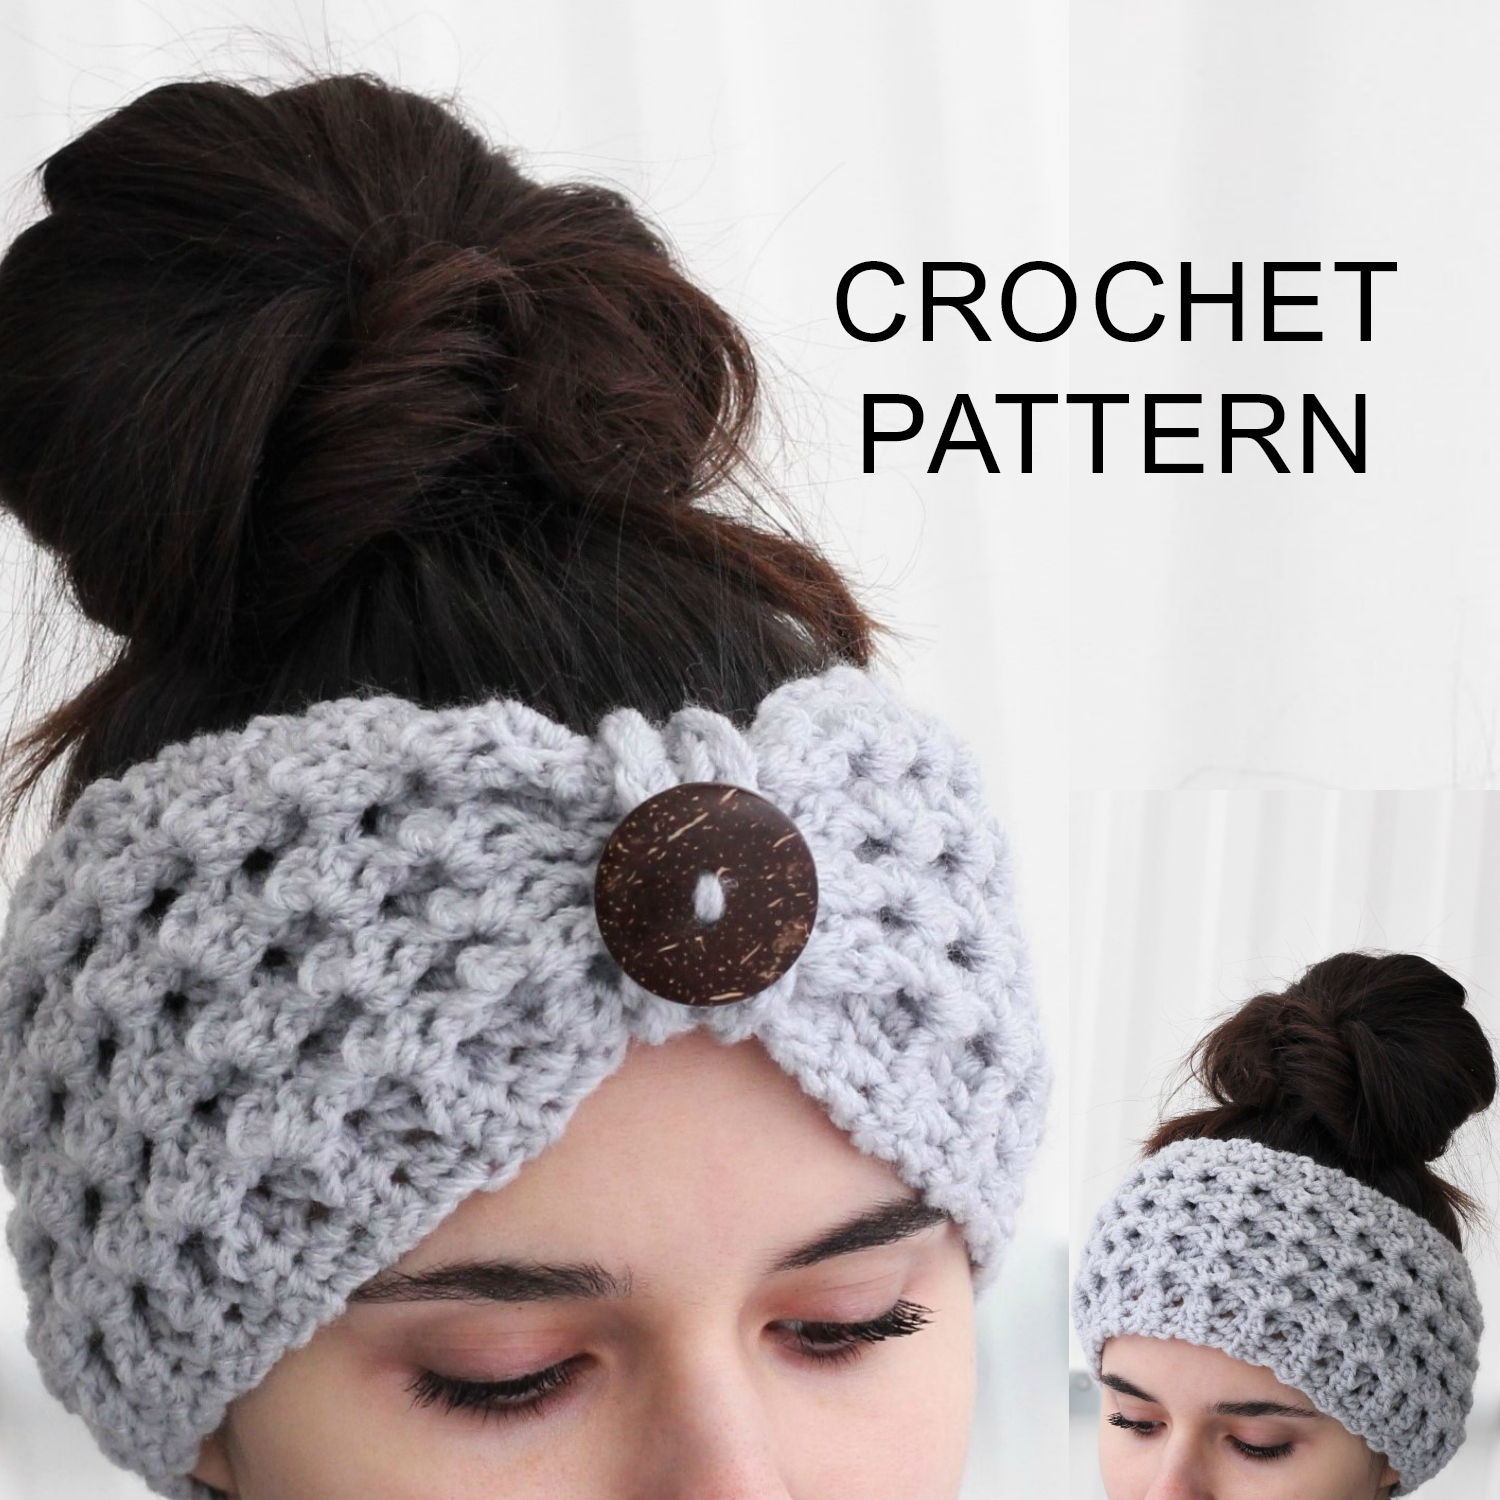 Crochet Headbands Ear Warmers Patterns Free Lida Headband Ear Warmer Crochet Pattern Pdf The Easy Design